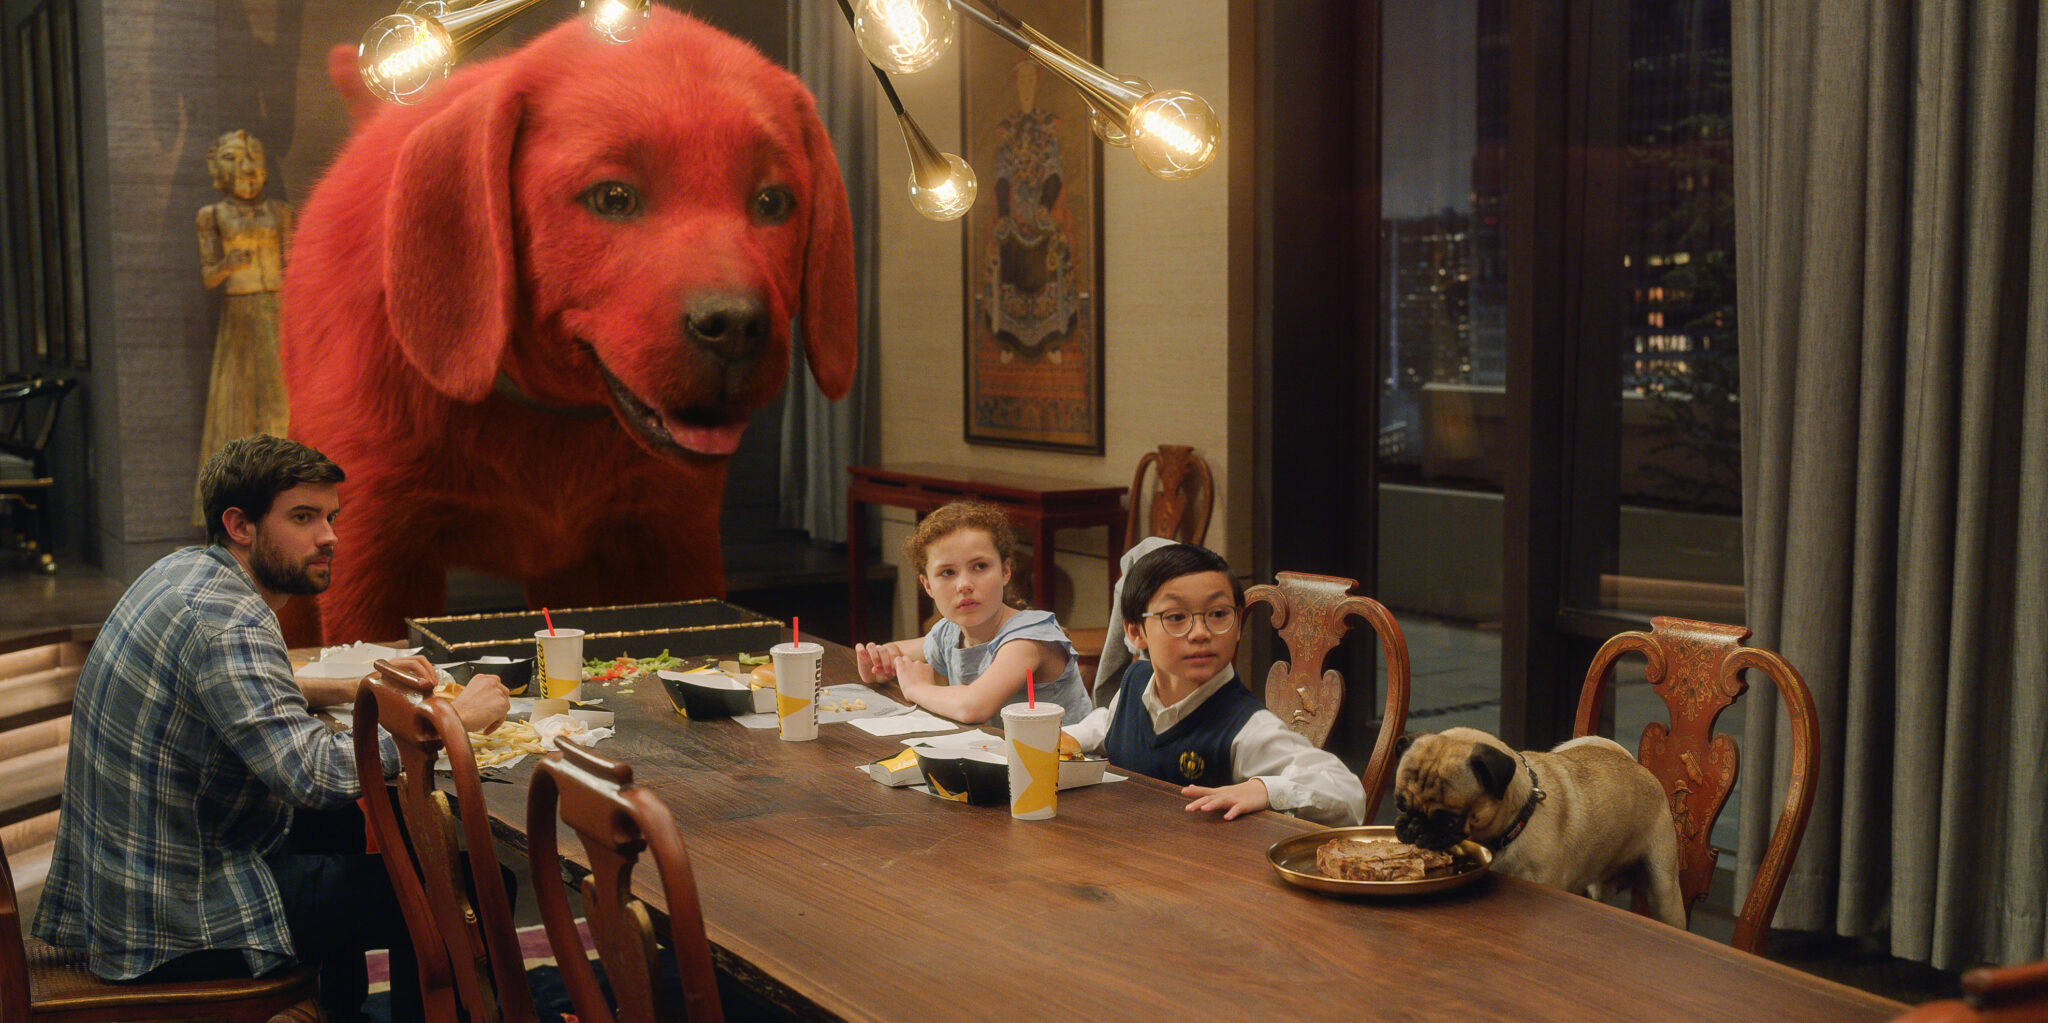 Ein großer roter Hund, rechts daneben zwei Kinder, ein Mädchen und ein Junge, am Essenstisch